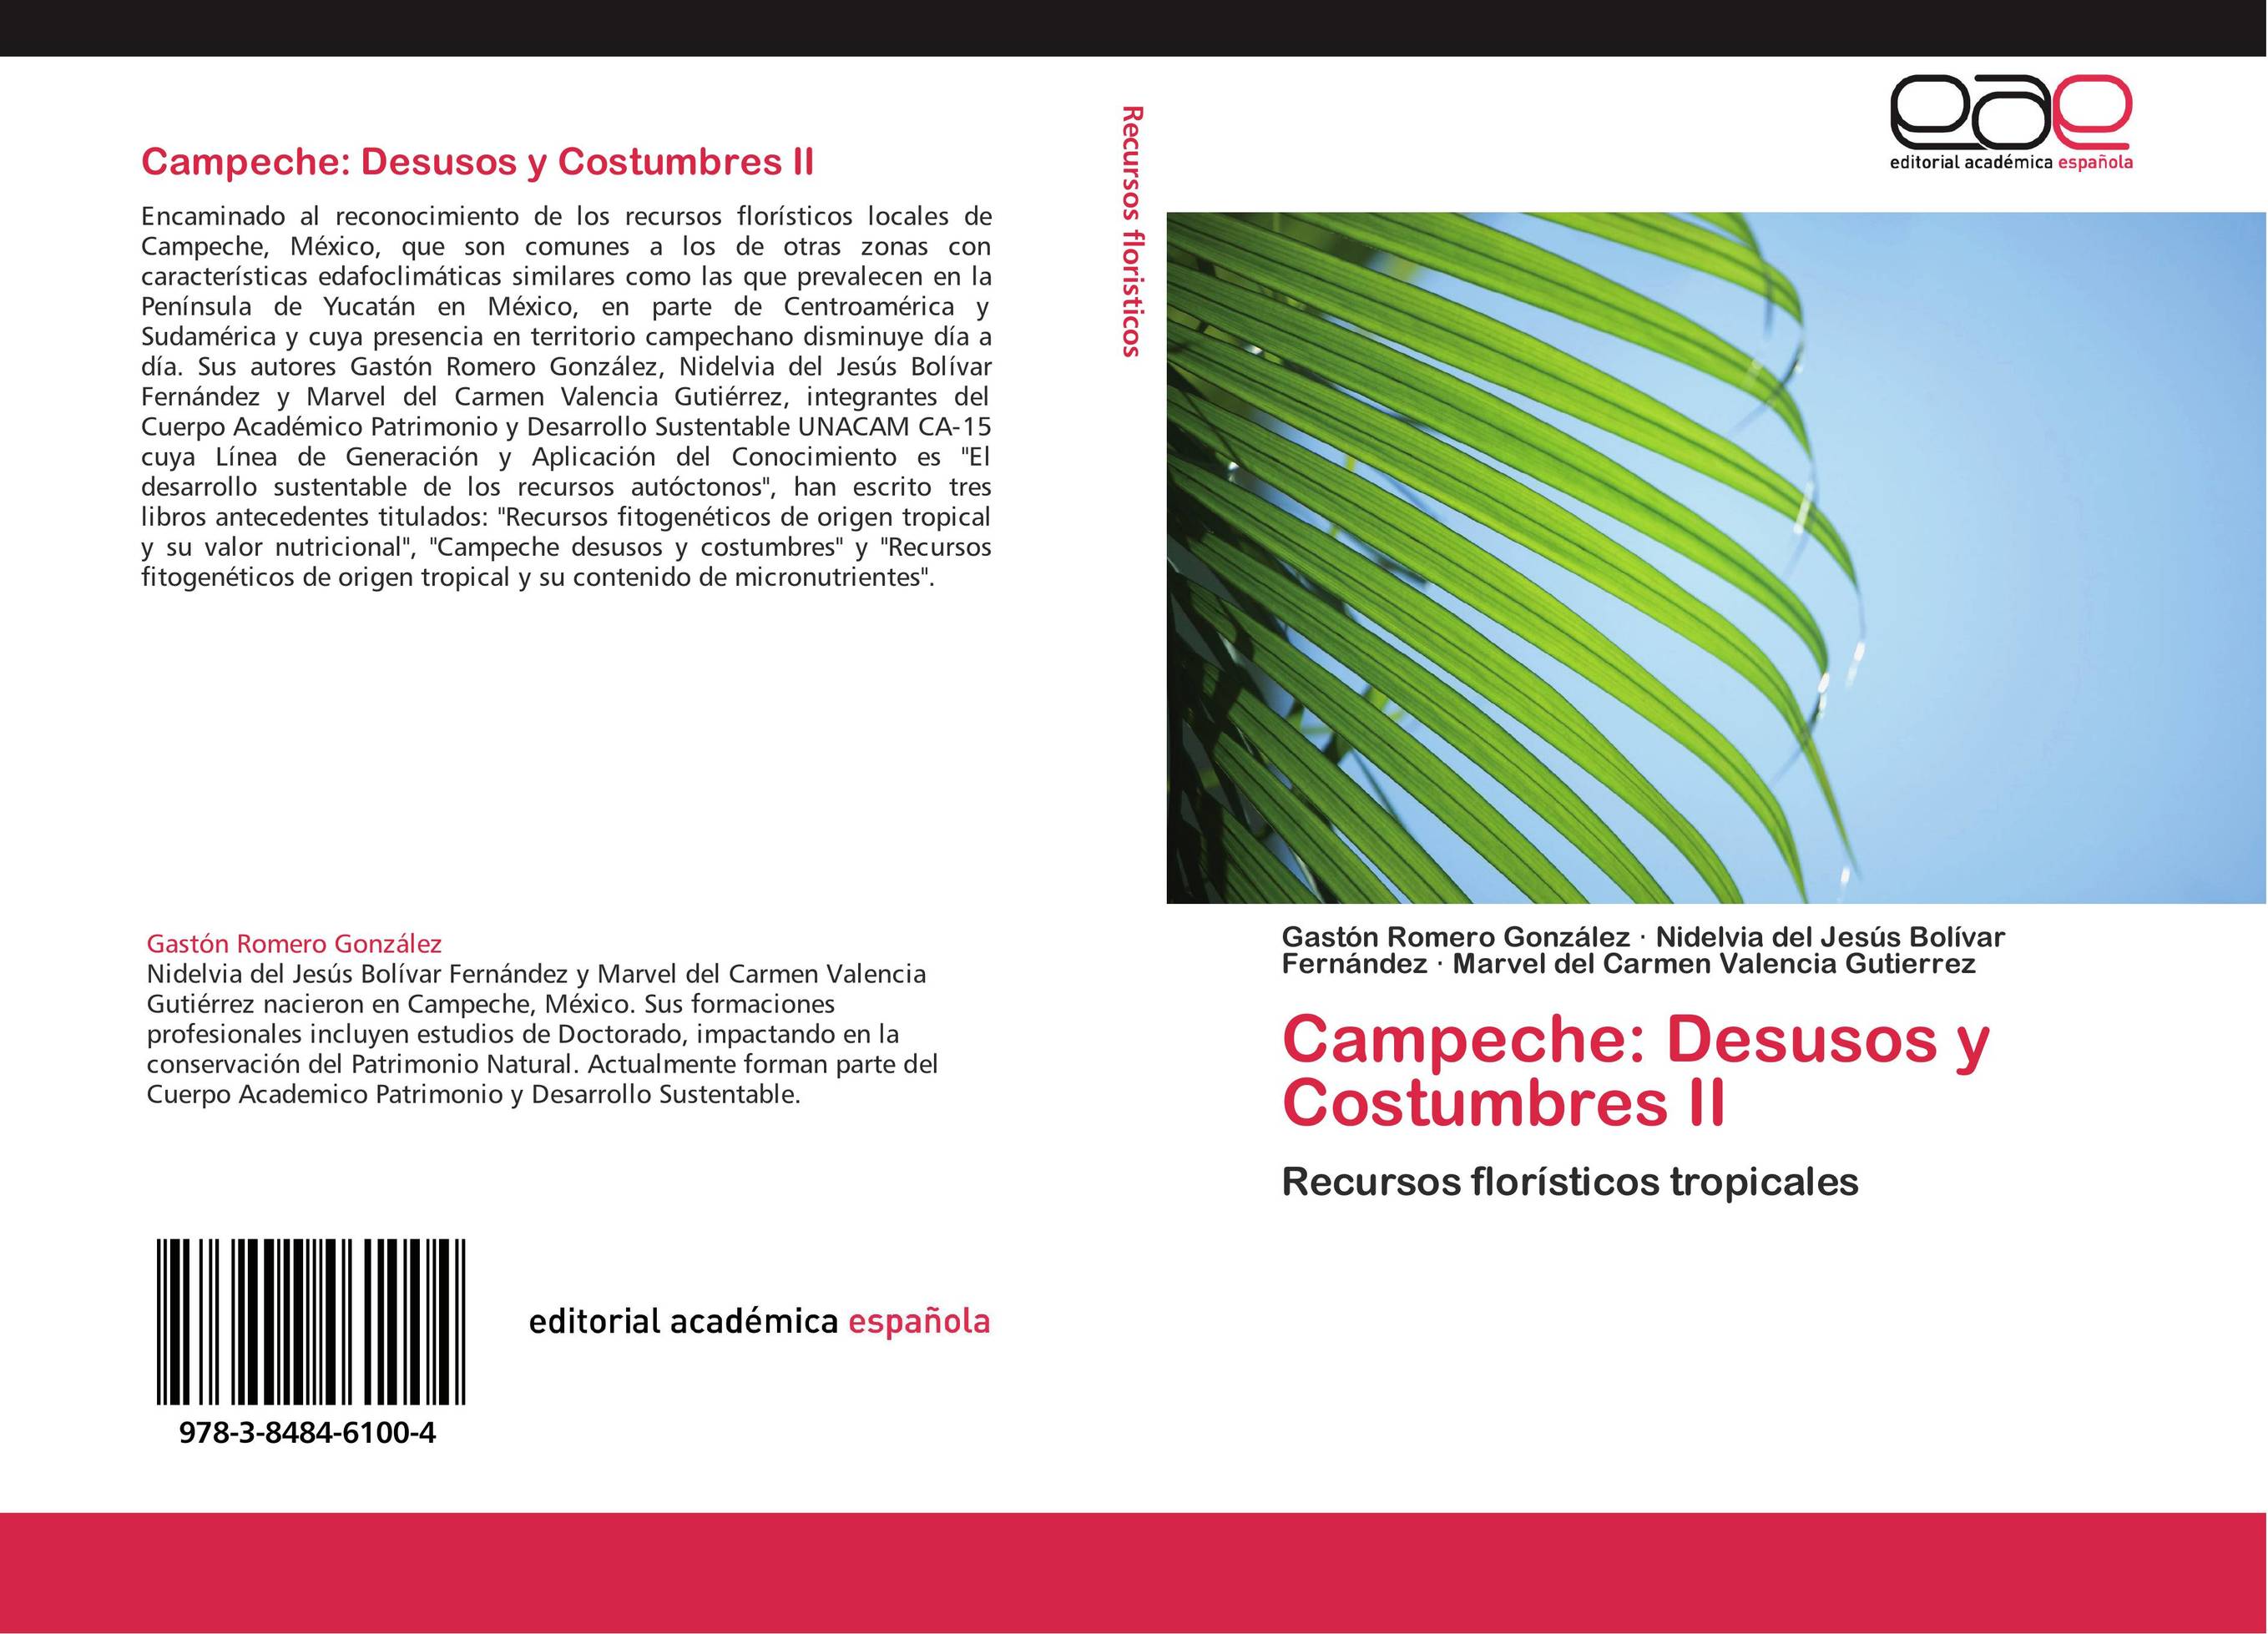 Campeche: Desusos y Costumbres II